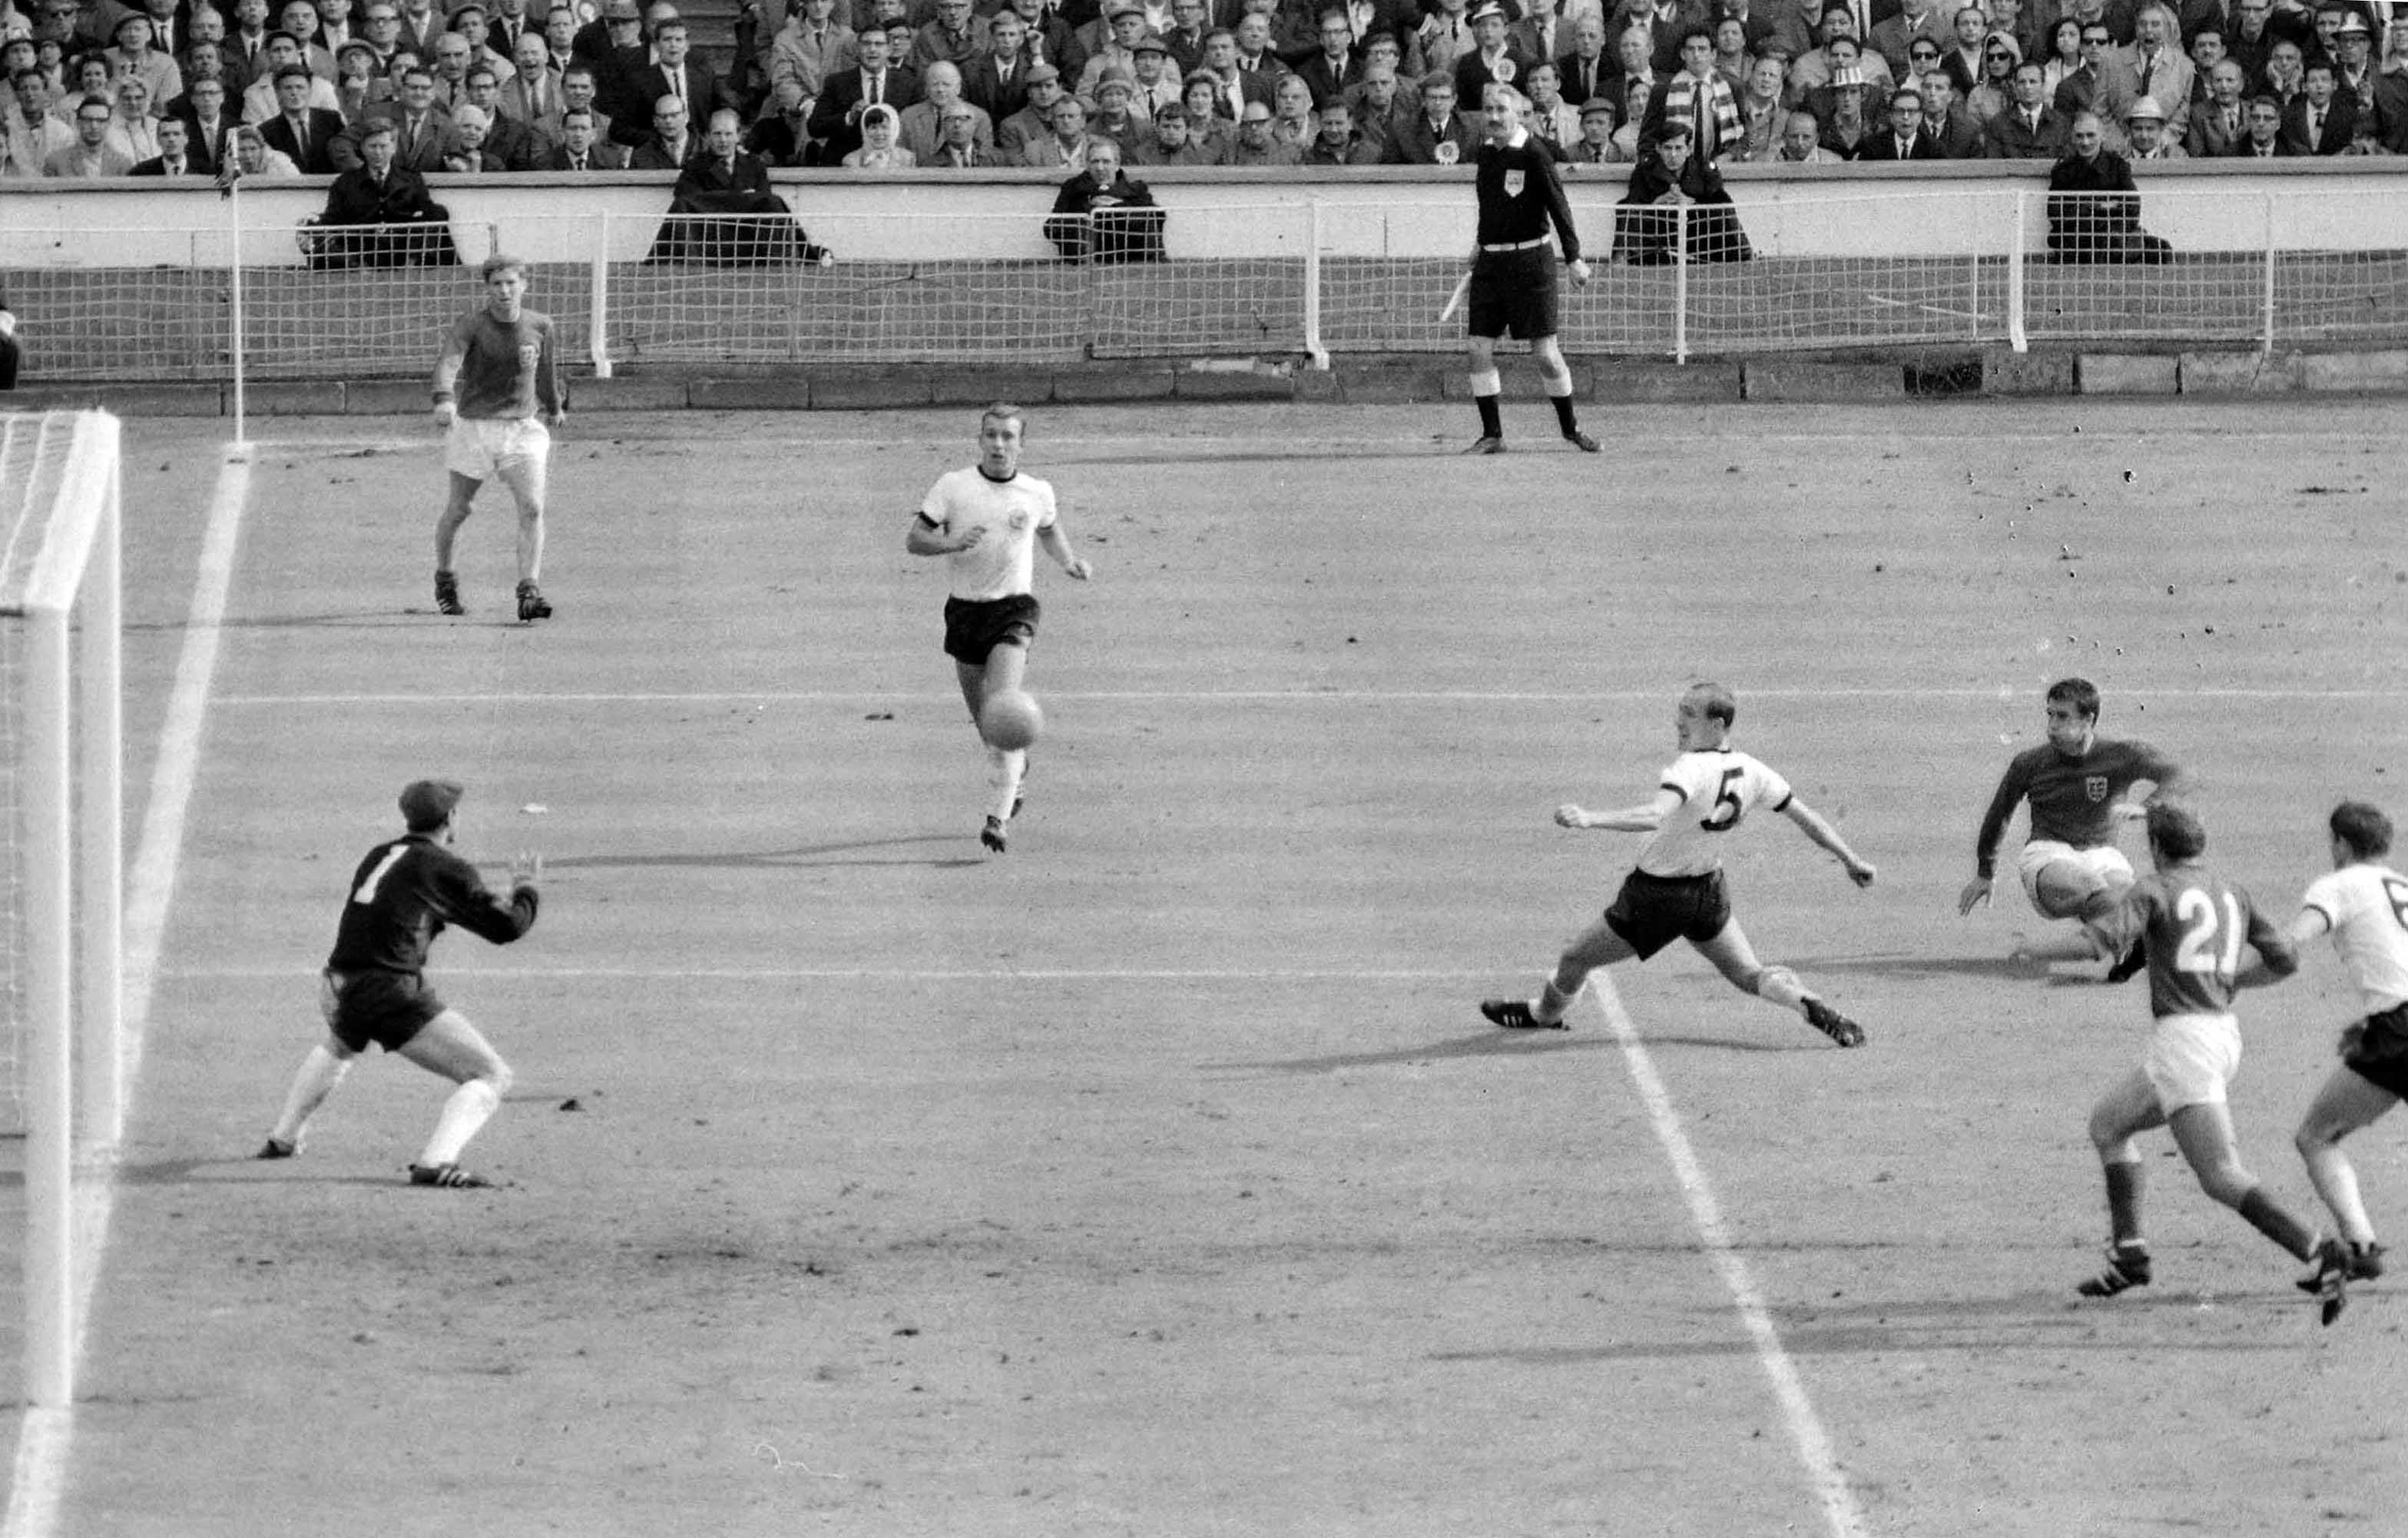 WM-Finale 1966: Stokes ehemaliger Stürmer Geoff Hurst (2.v.re.) hat gerade abgezogen, Sekundenbruchteile später ist der Ball "drin" - die Geburtsstunde des "Wembley-Tores".